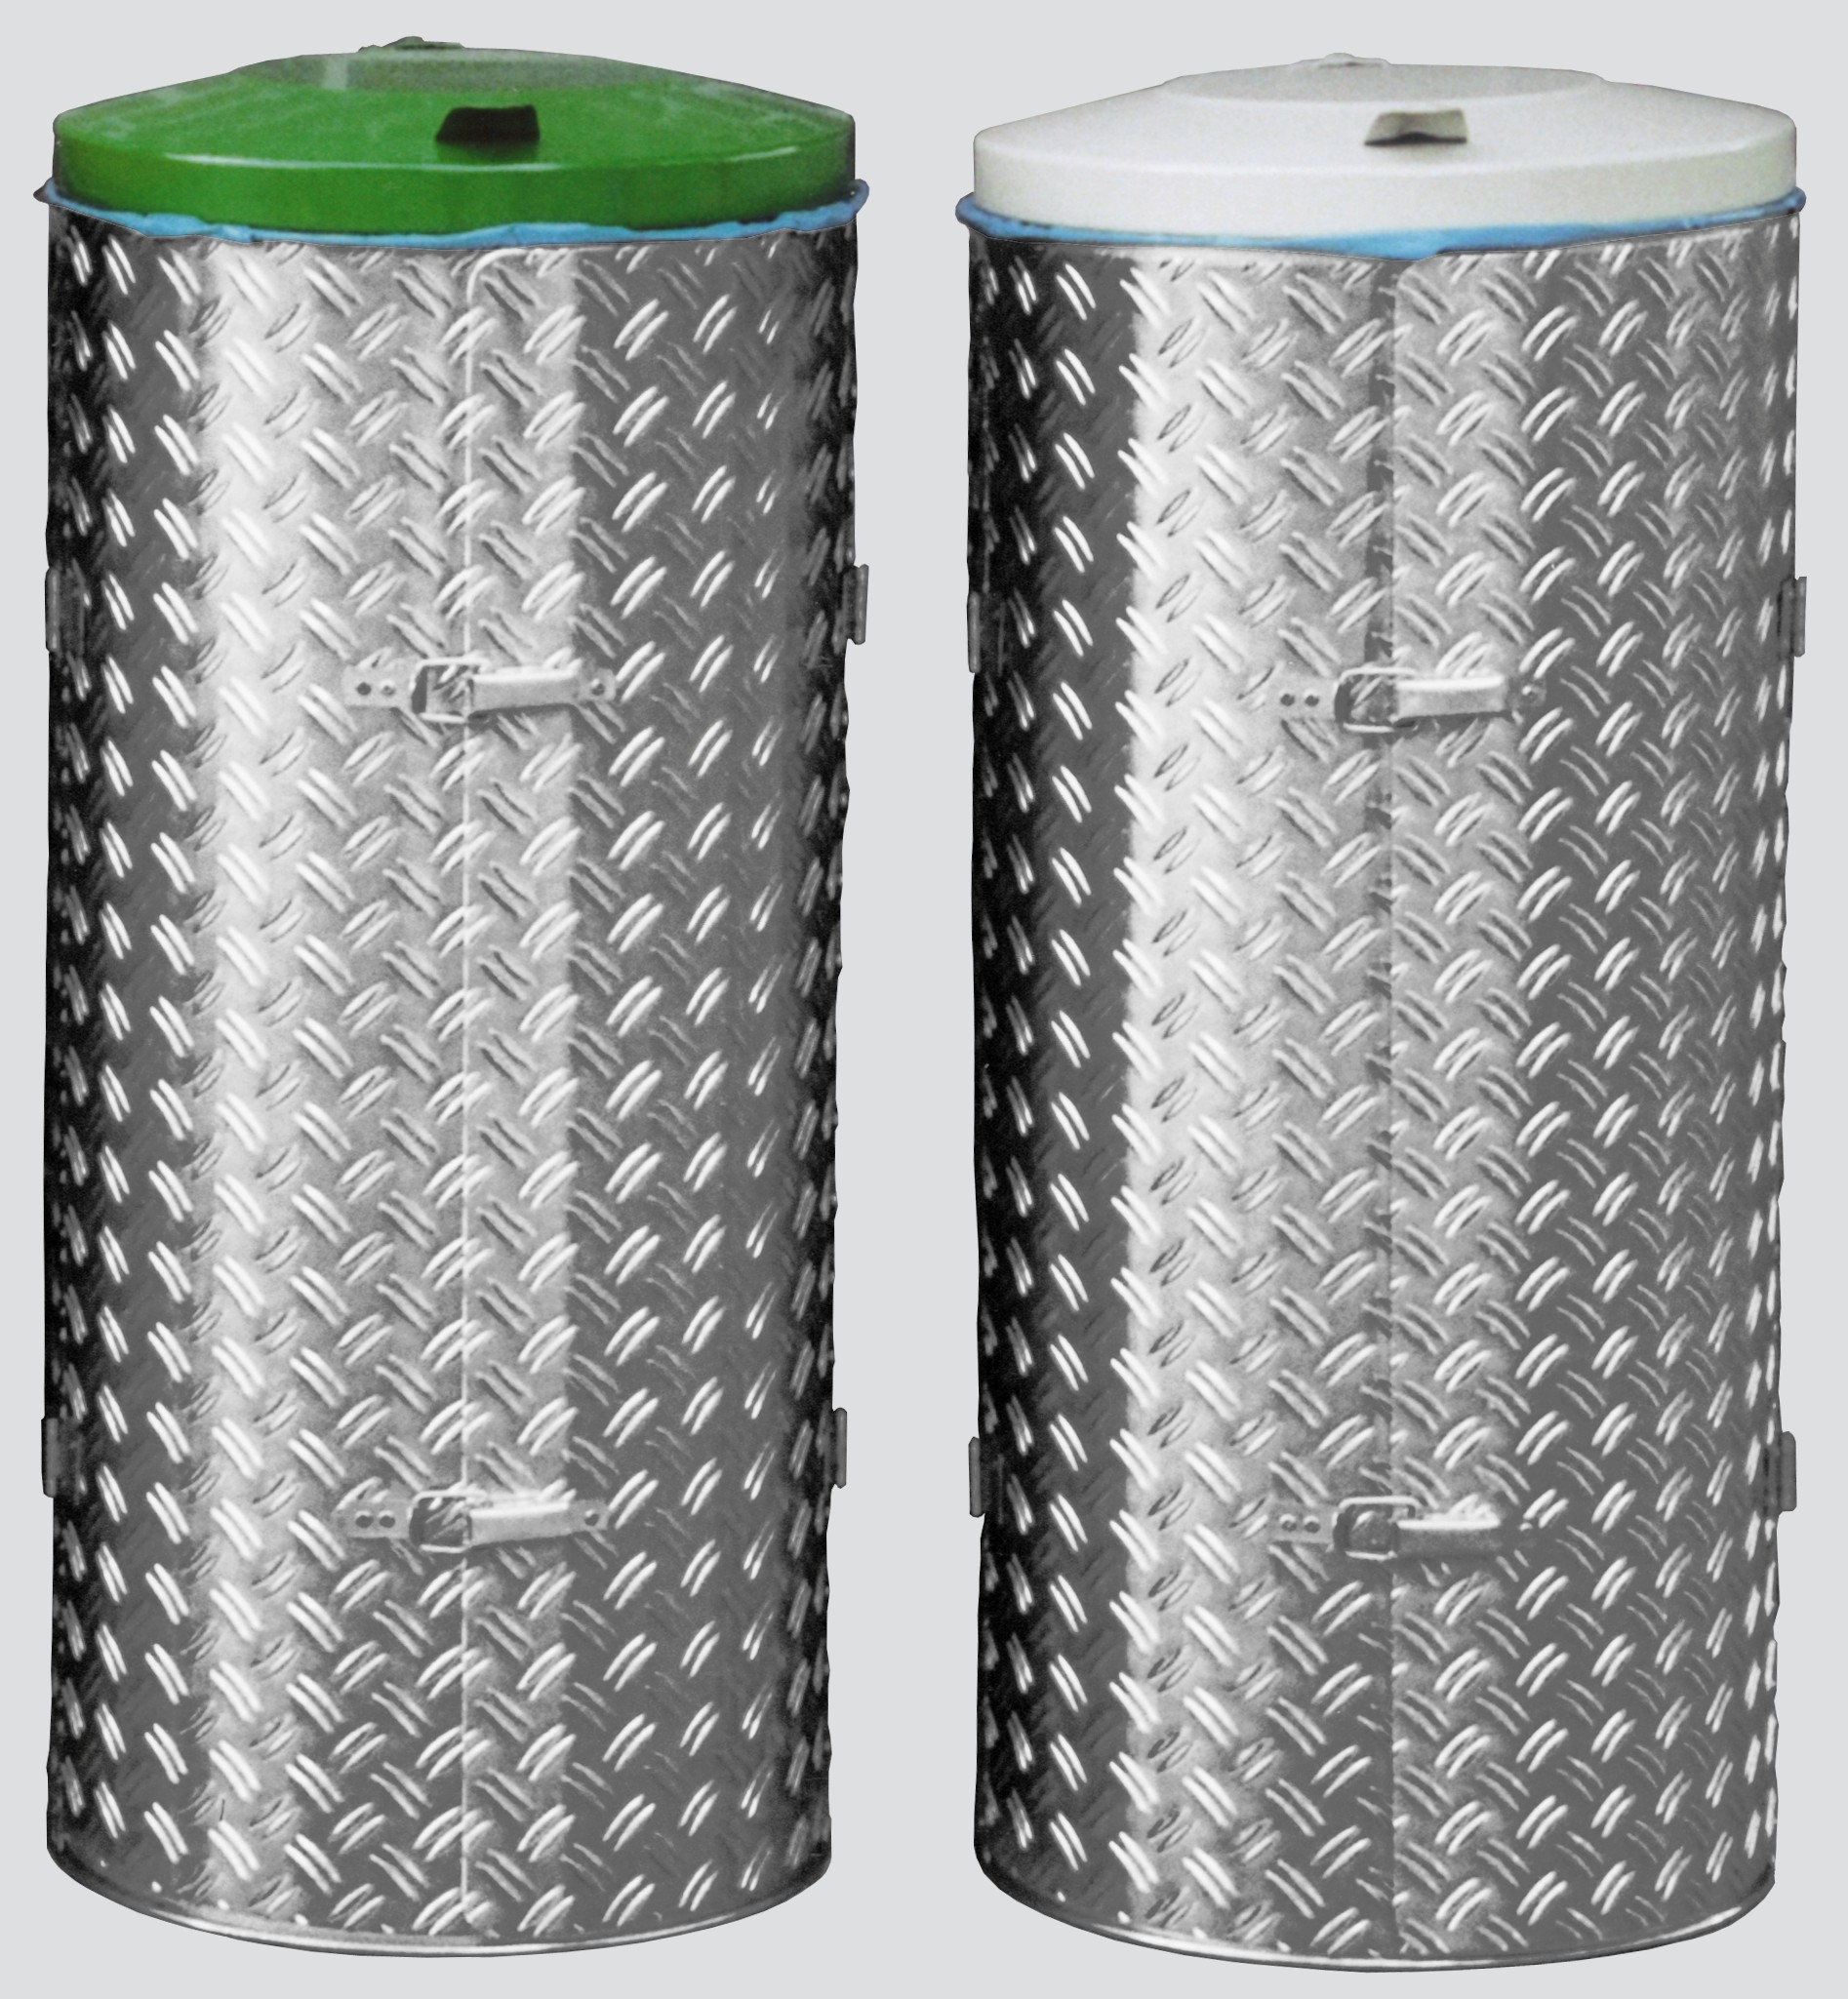 Kompakter Abfallsammler mit Türe | 120 Liter, HxBxT 99x43,5x43,5cm | Edelstahl | Alu-Duett-Blech | Deckel grün